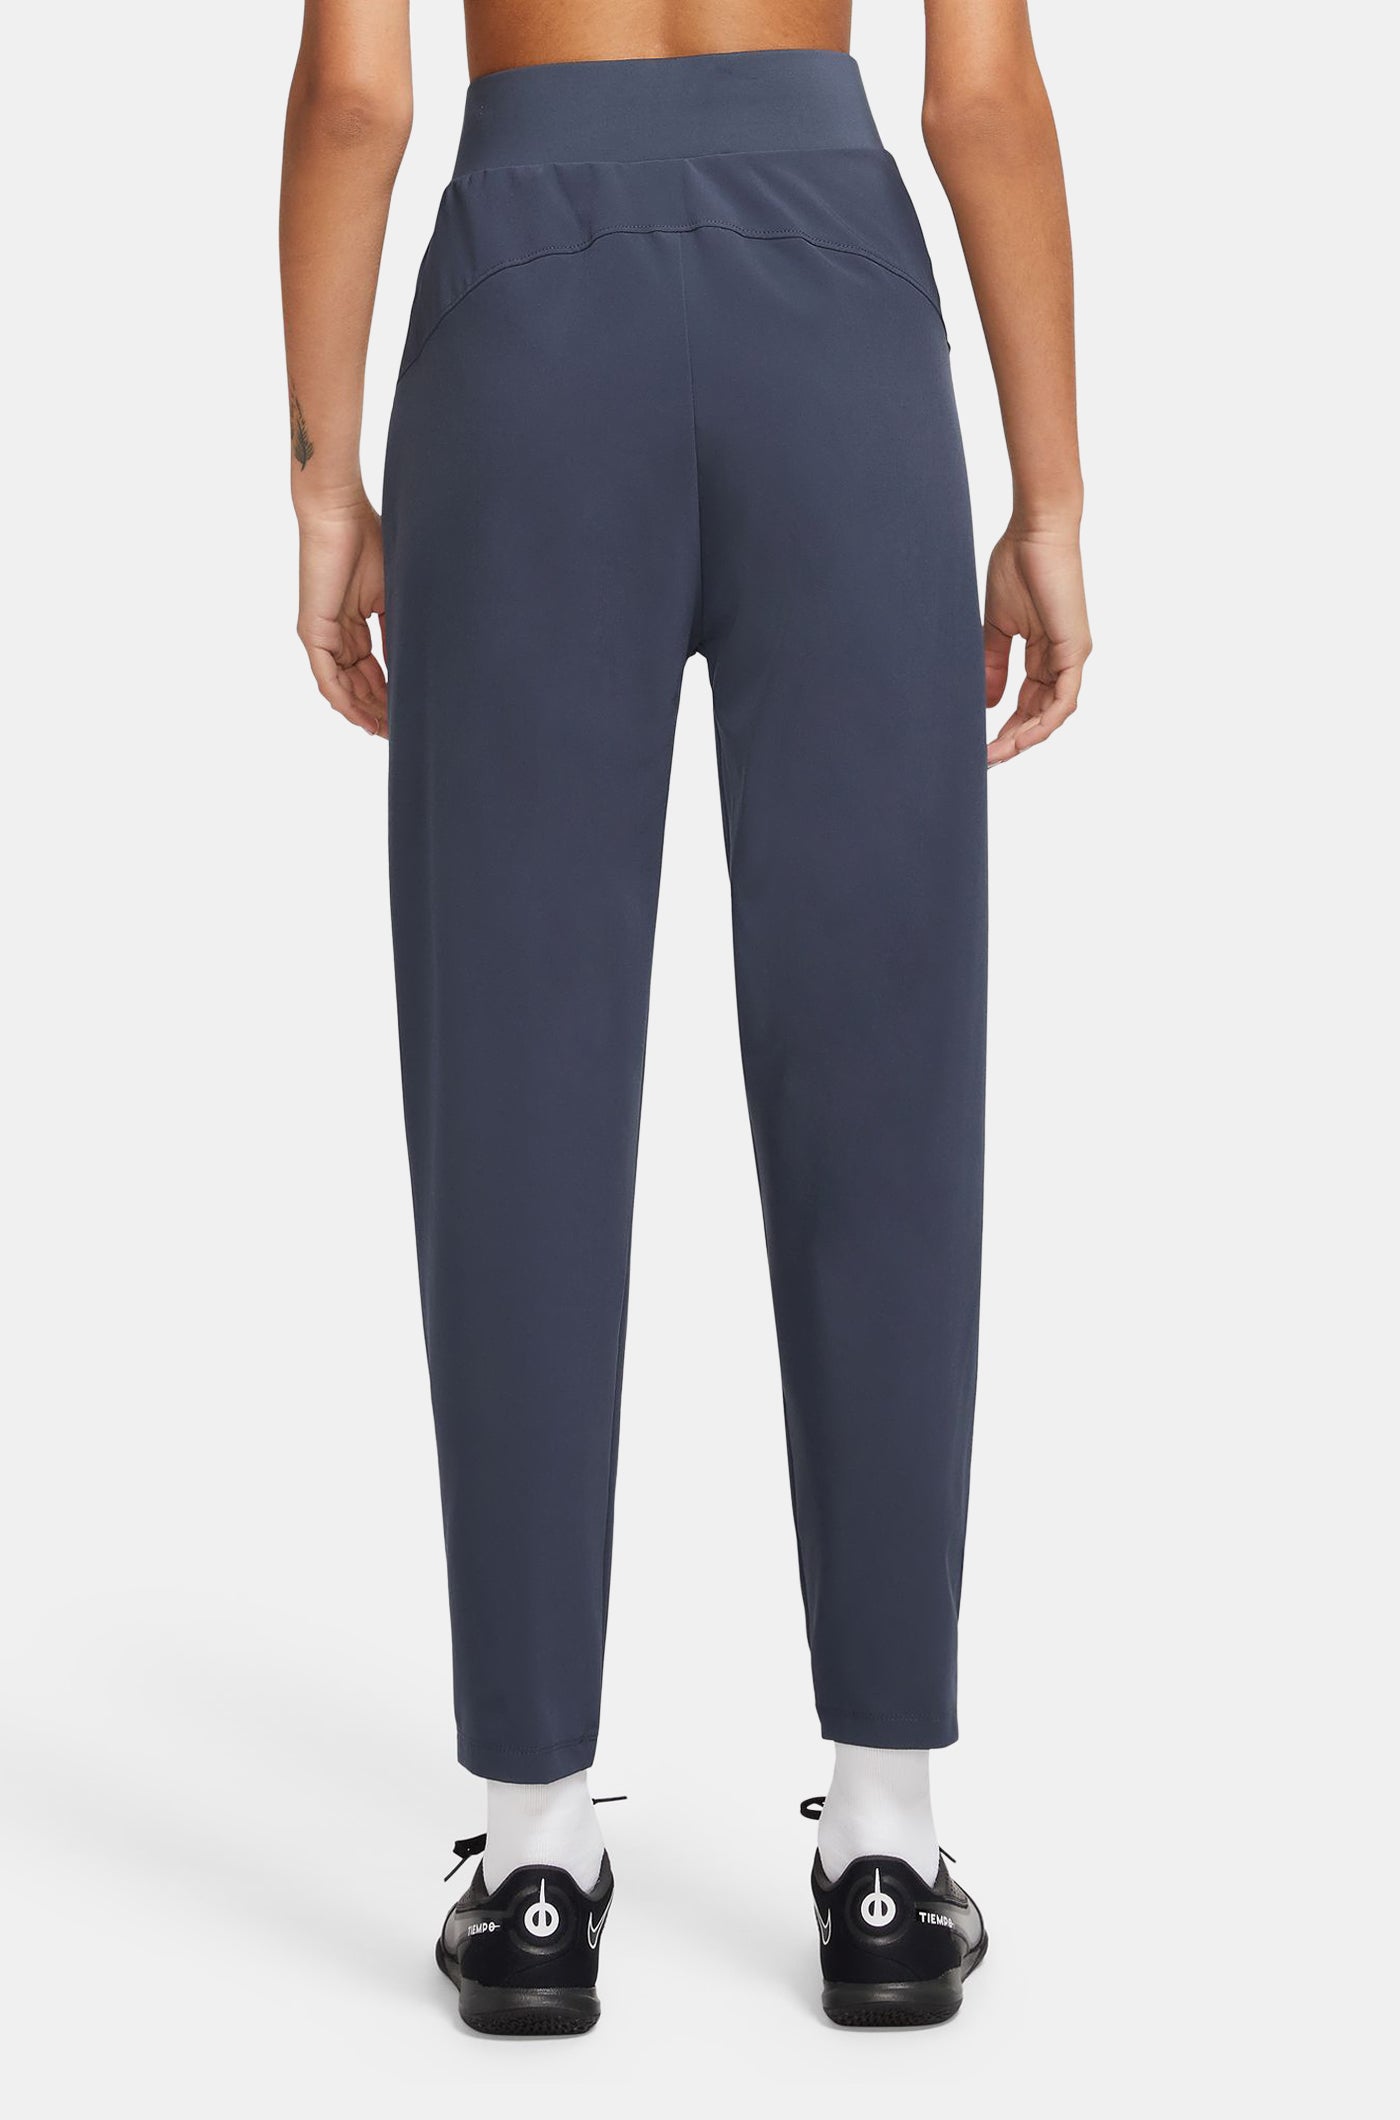 Pantalon bleu Nike Barça - Femme